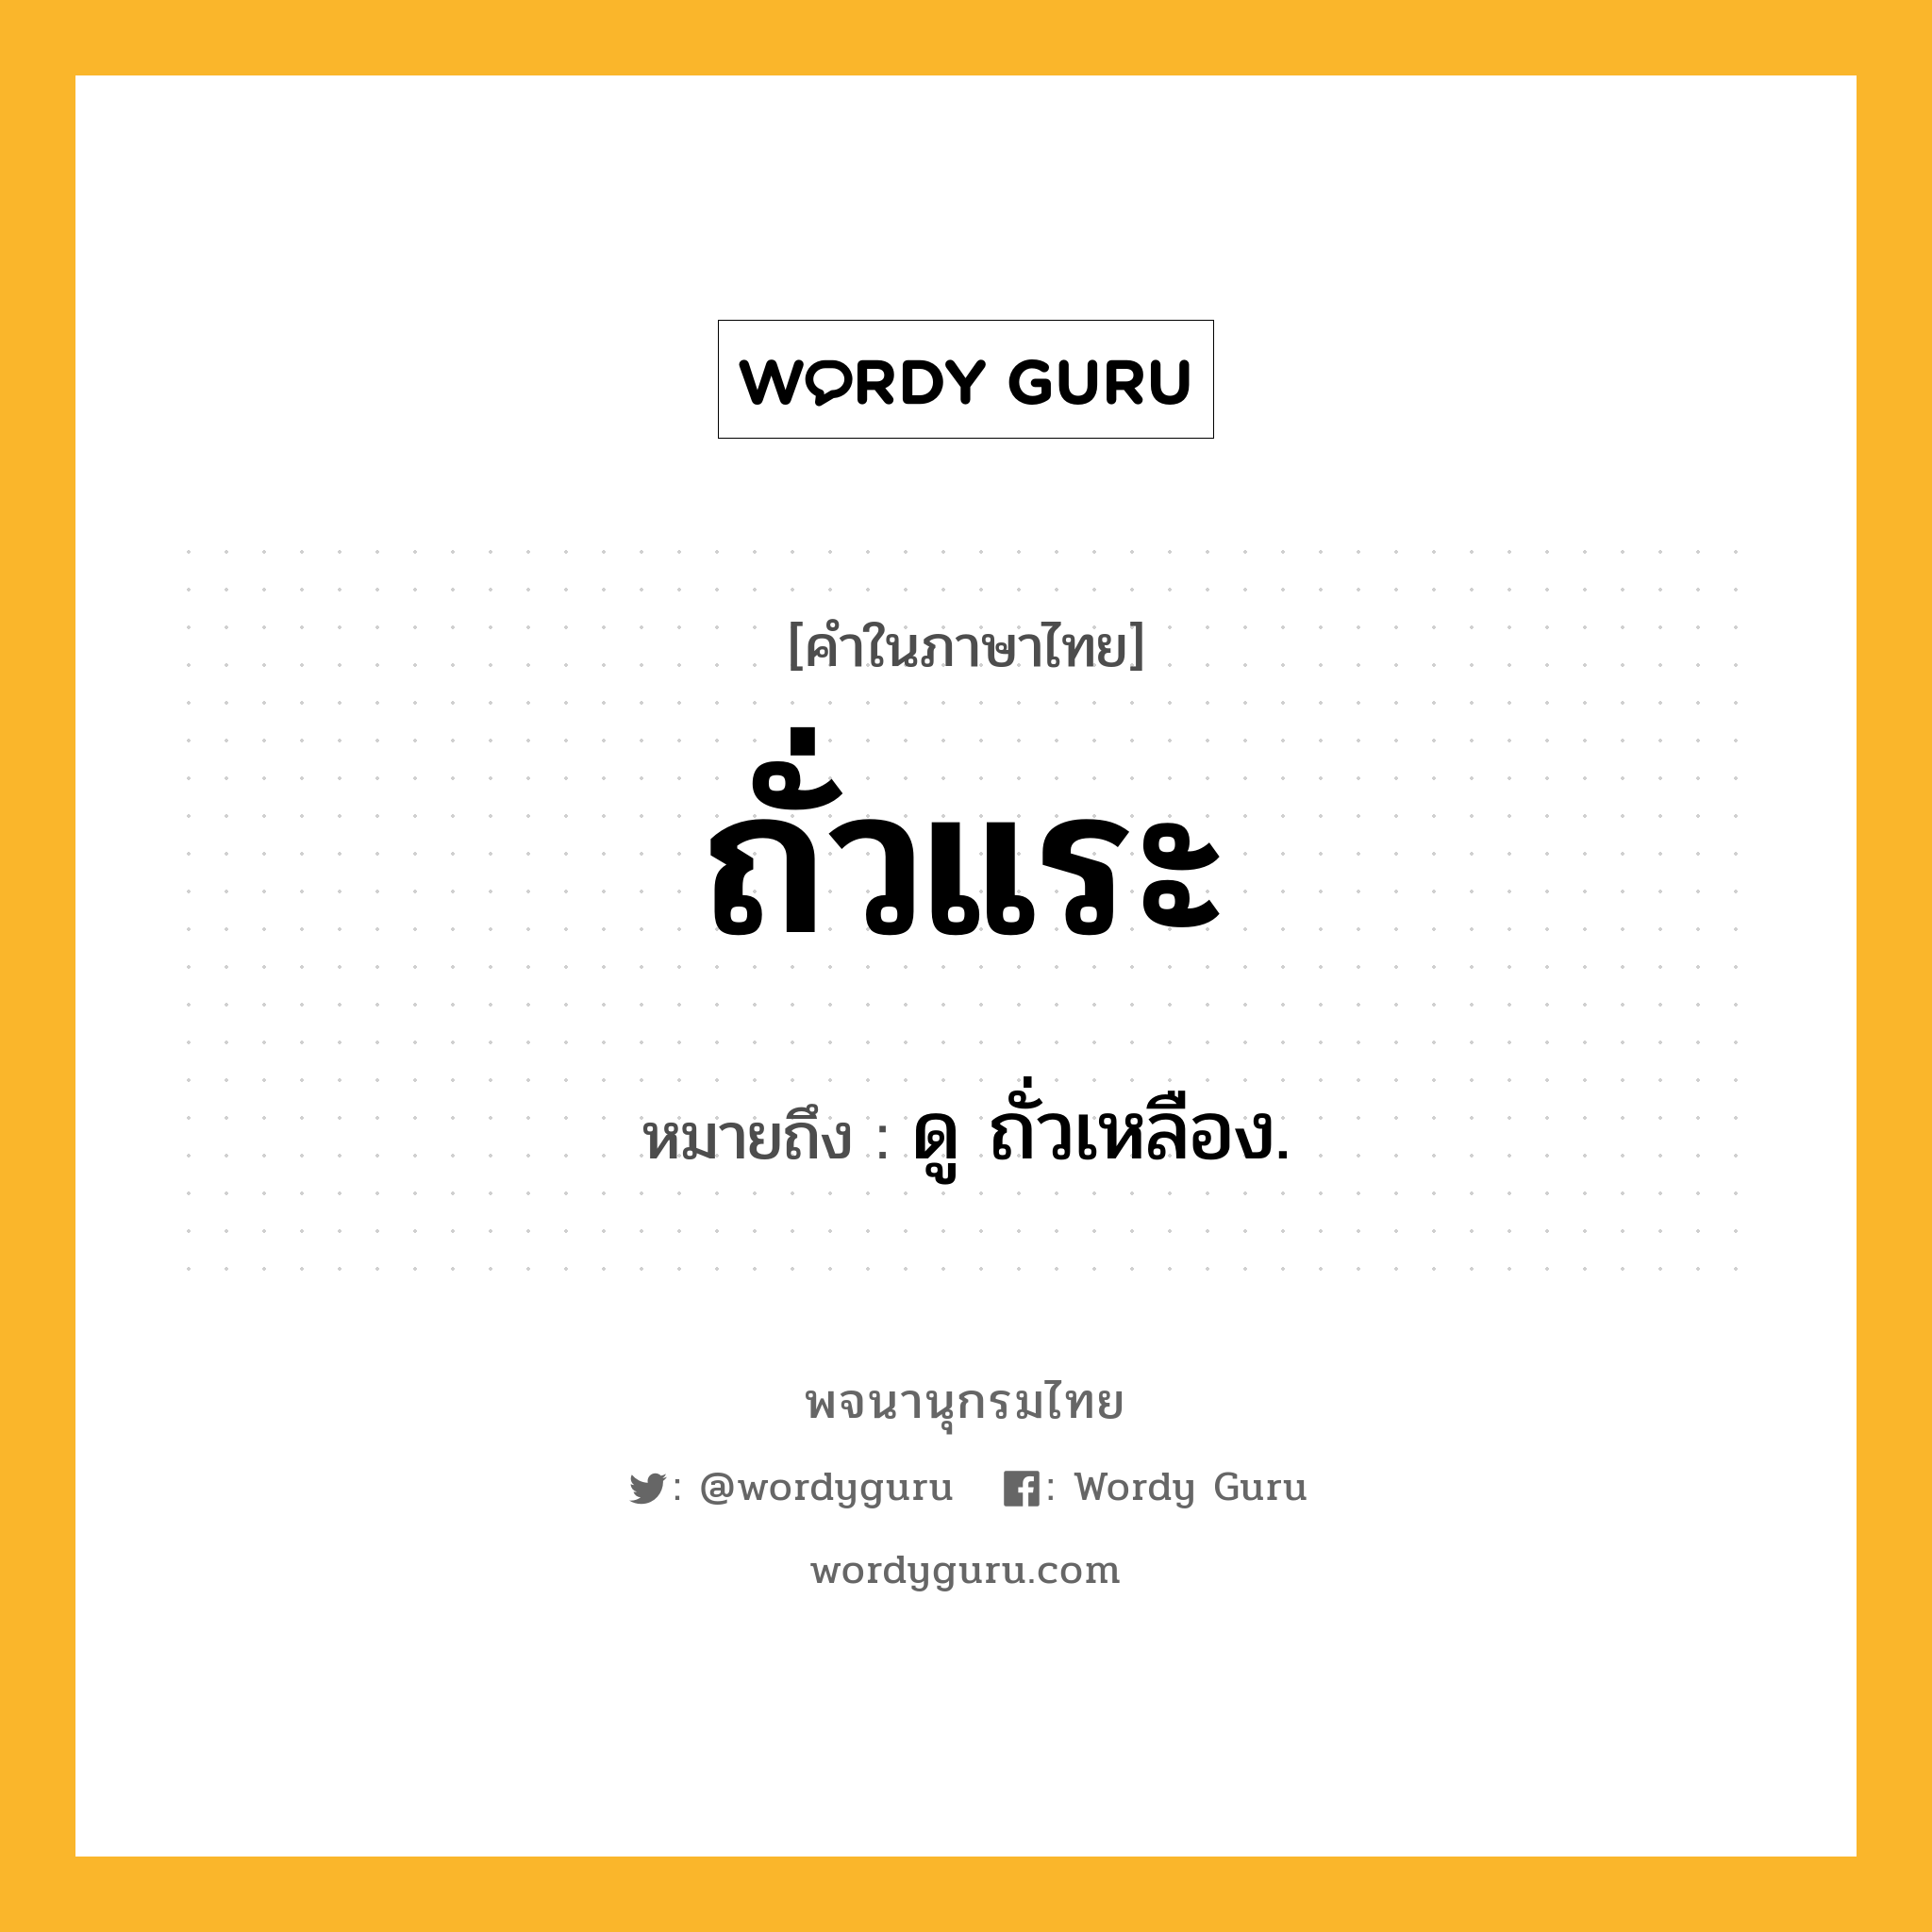 ถั่วแระ ความหมาย หมายถึงอะไร?, คำในภาษาไทย ถั่วแระ หมายถึง ดู ถั่วเหลือง.